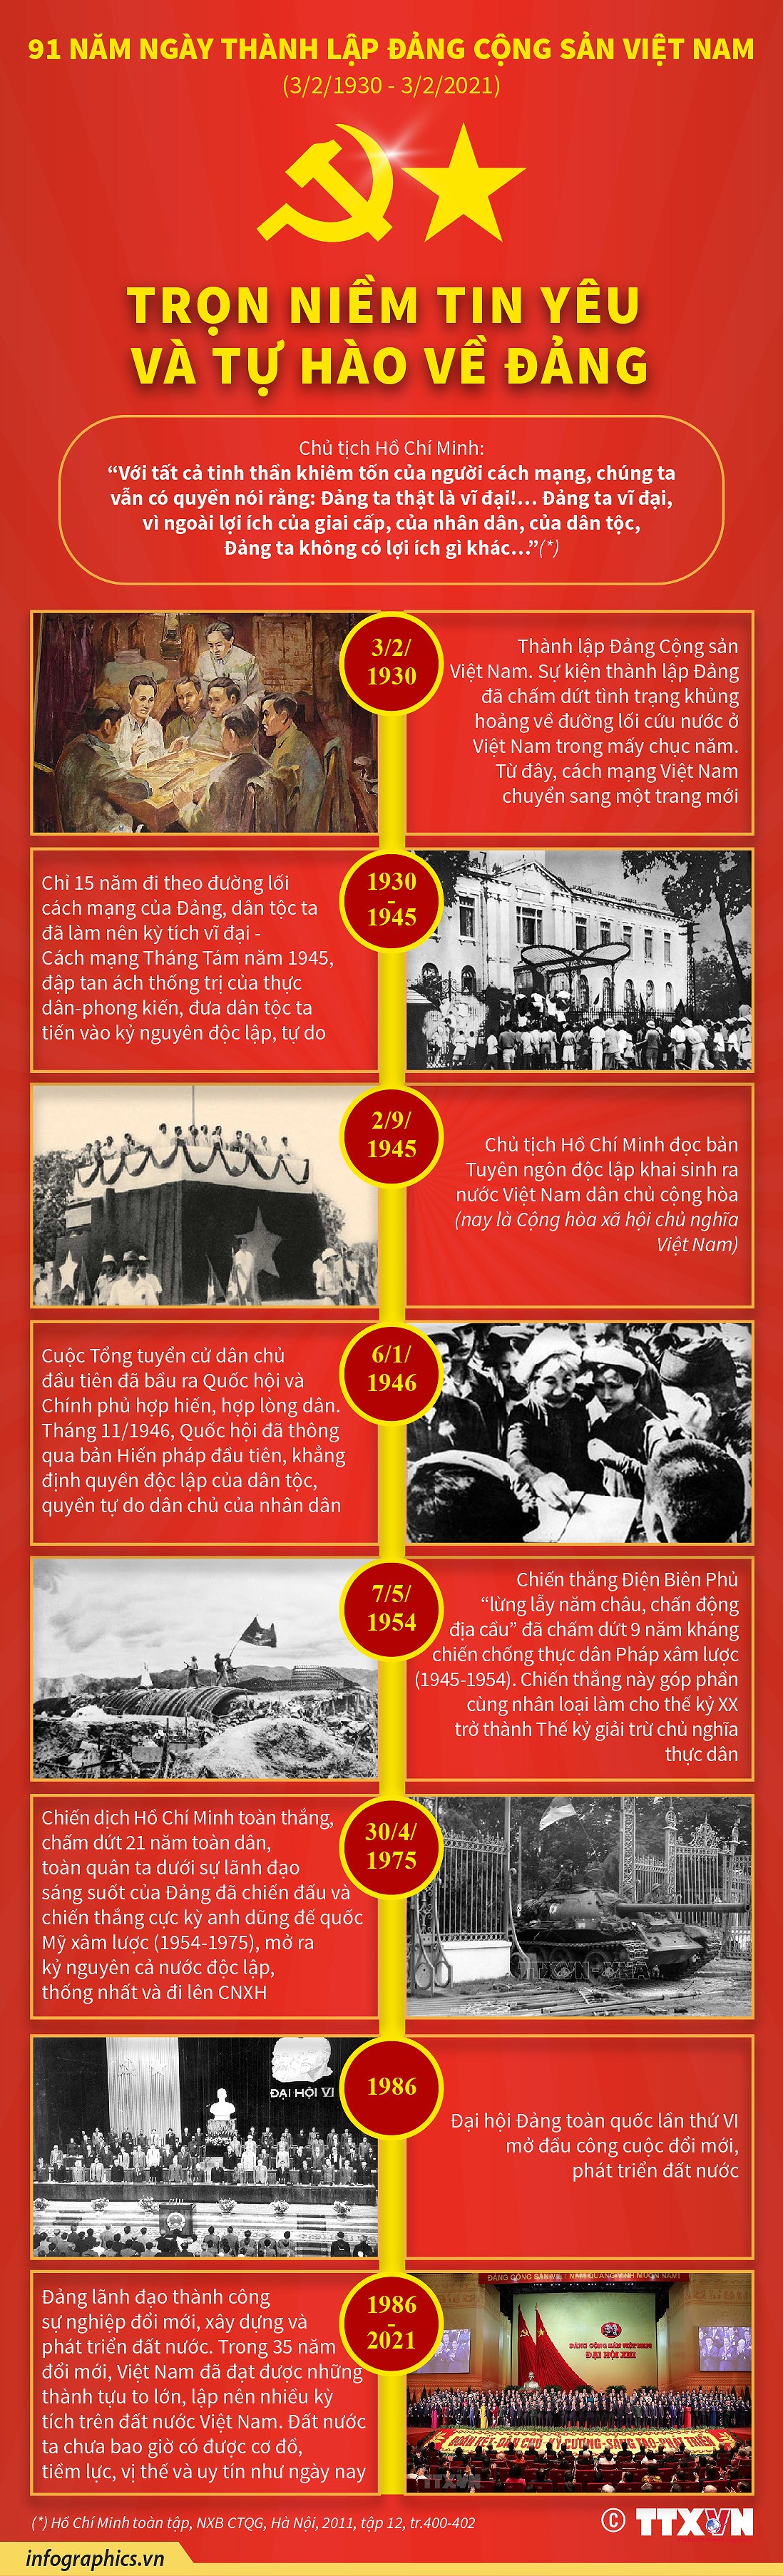 [Infographics] Tron niem tin yeu va tu hao ve Dang Cong san Viet Nam hinh anh 1